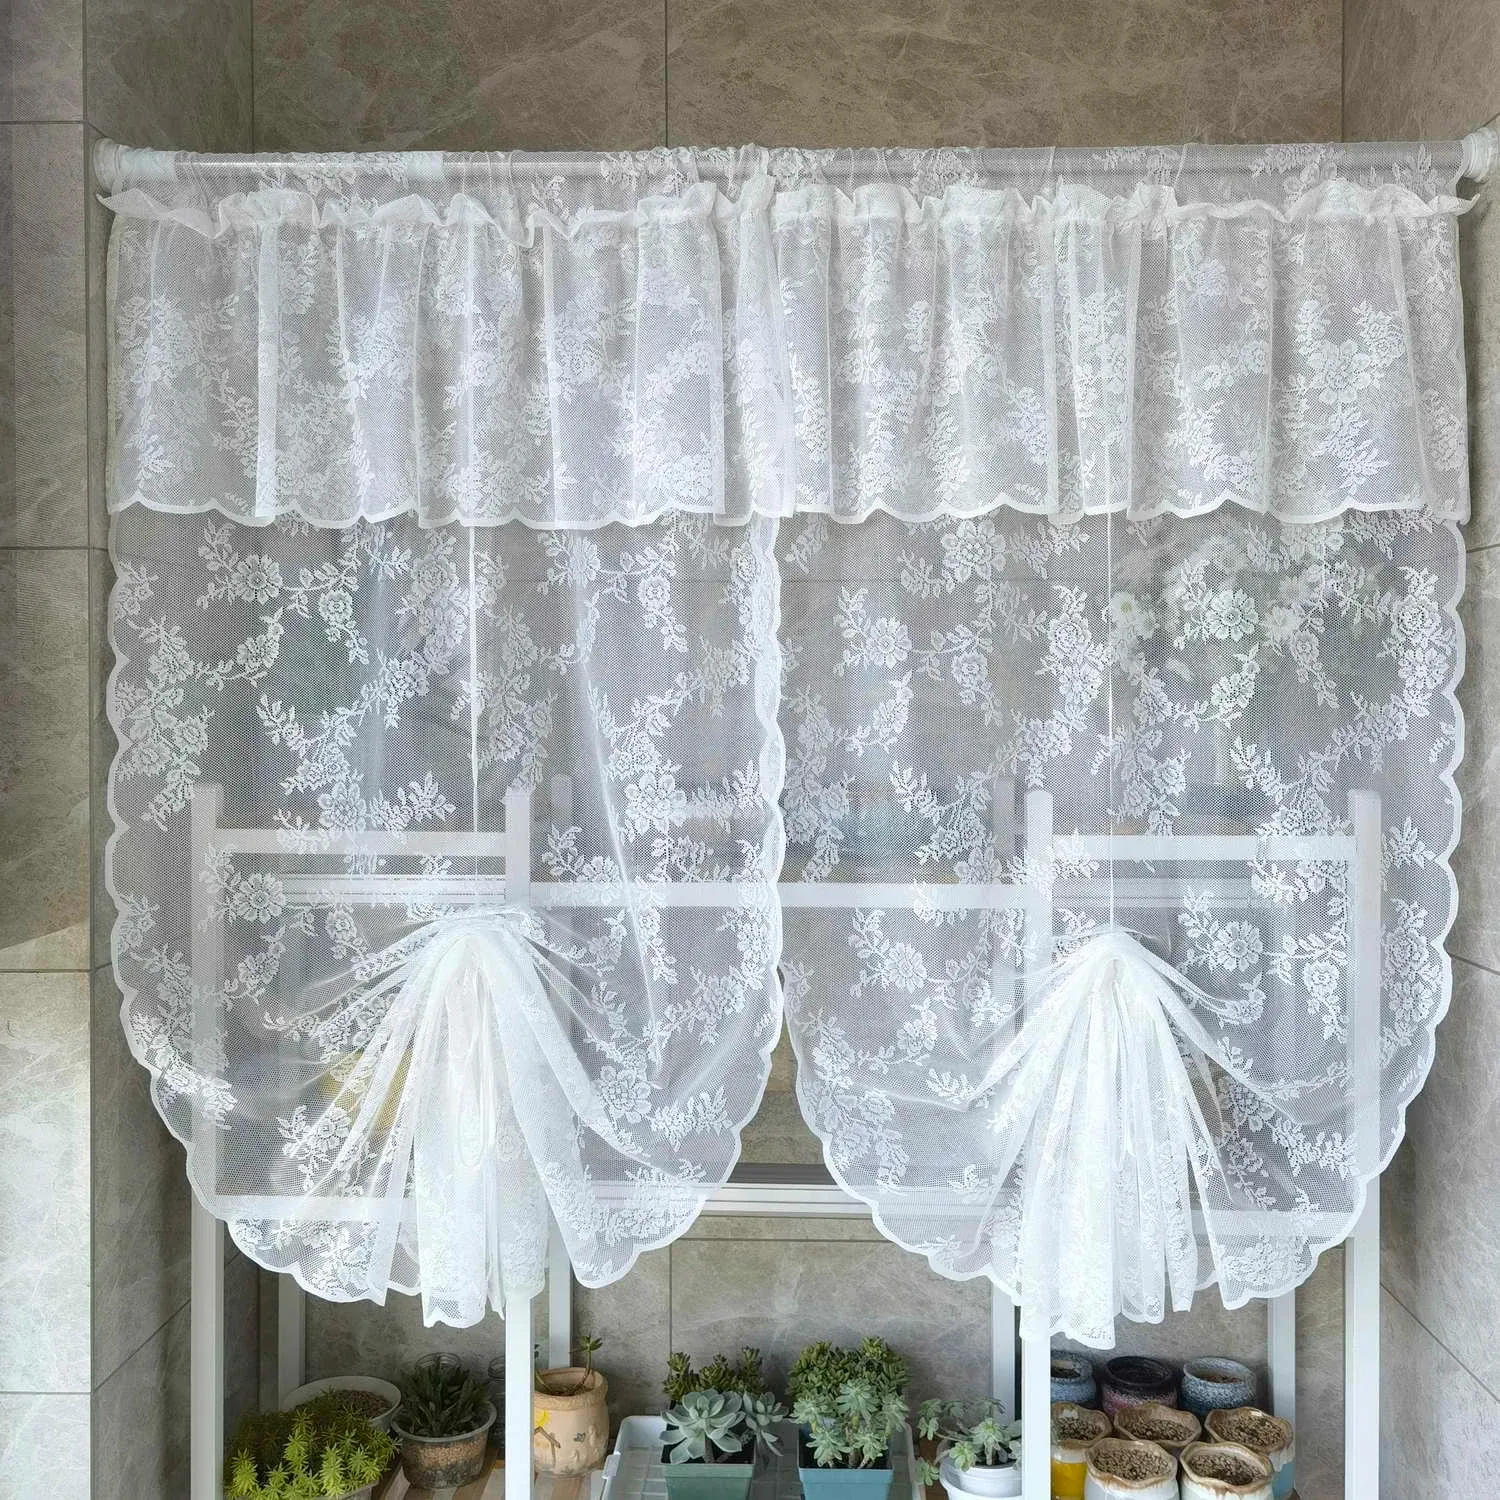 Vorhänge 1 STÜCK Weißer Doppel-Pull-up-Vorhang für kleine Fenster Blumenspitze Sheer Roman Drape Kitchen Study Blinds #E